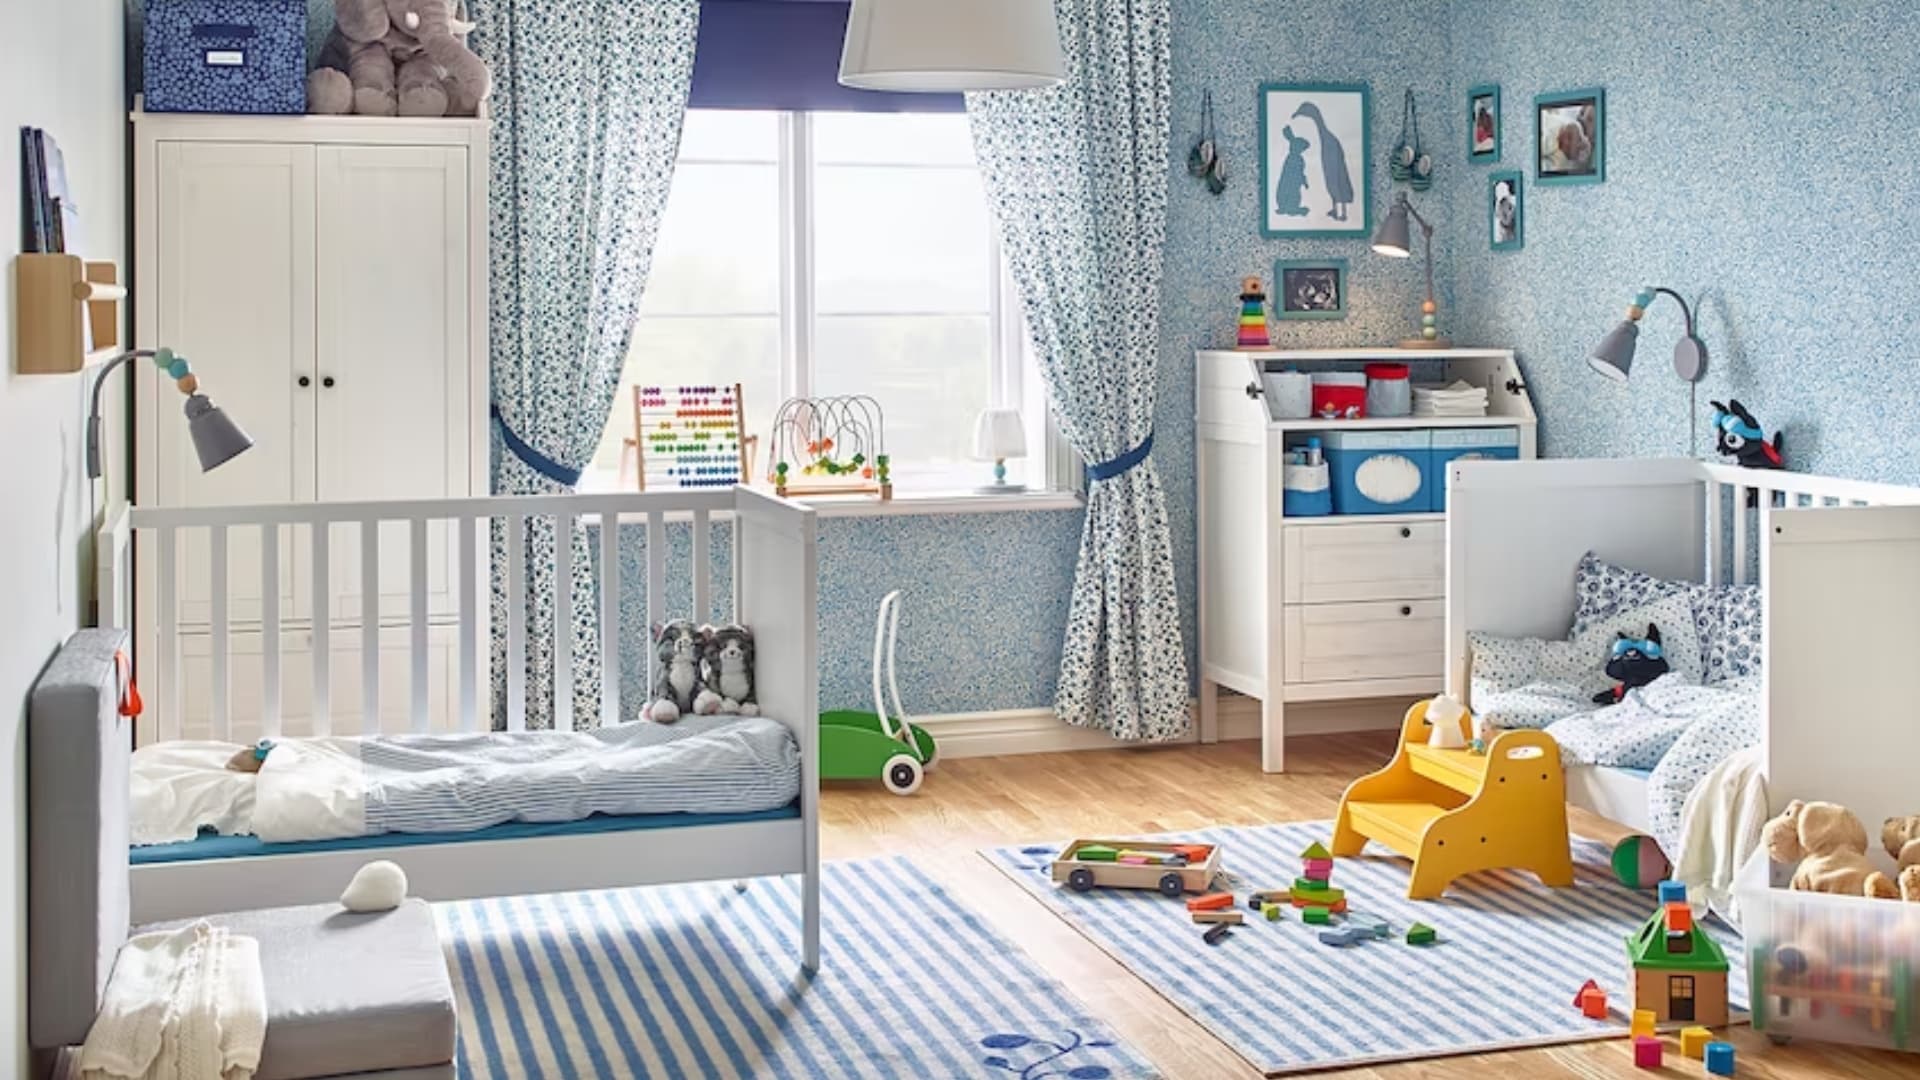 Una habitación infantil amueblada con productos de Ikea | IKEA